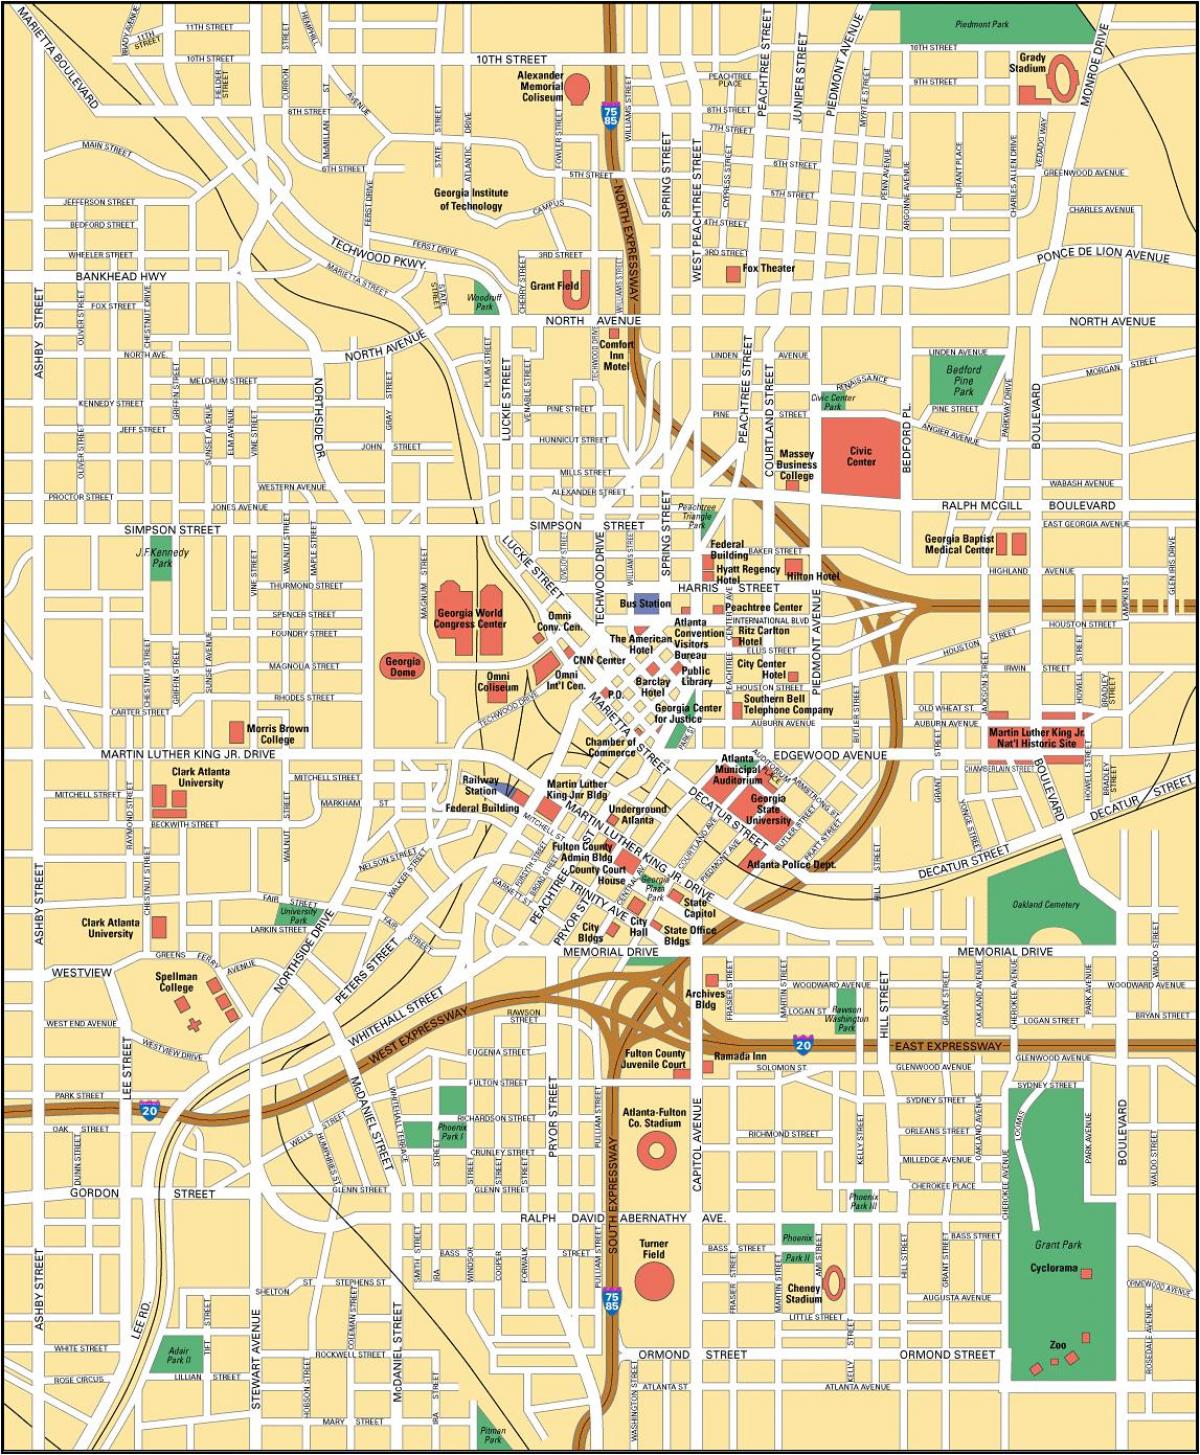 Mapa do centro da cidade de Atlanta